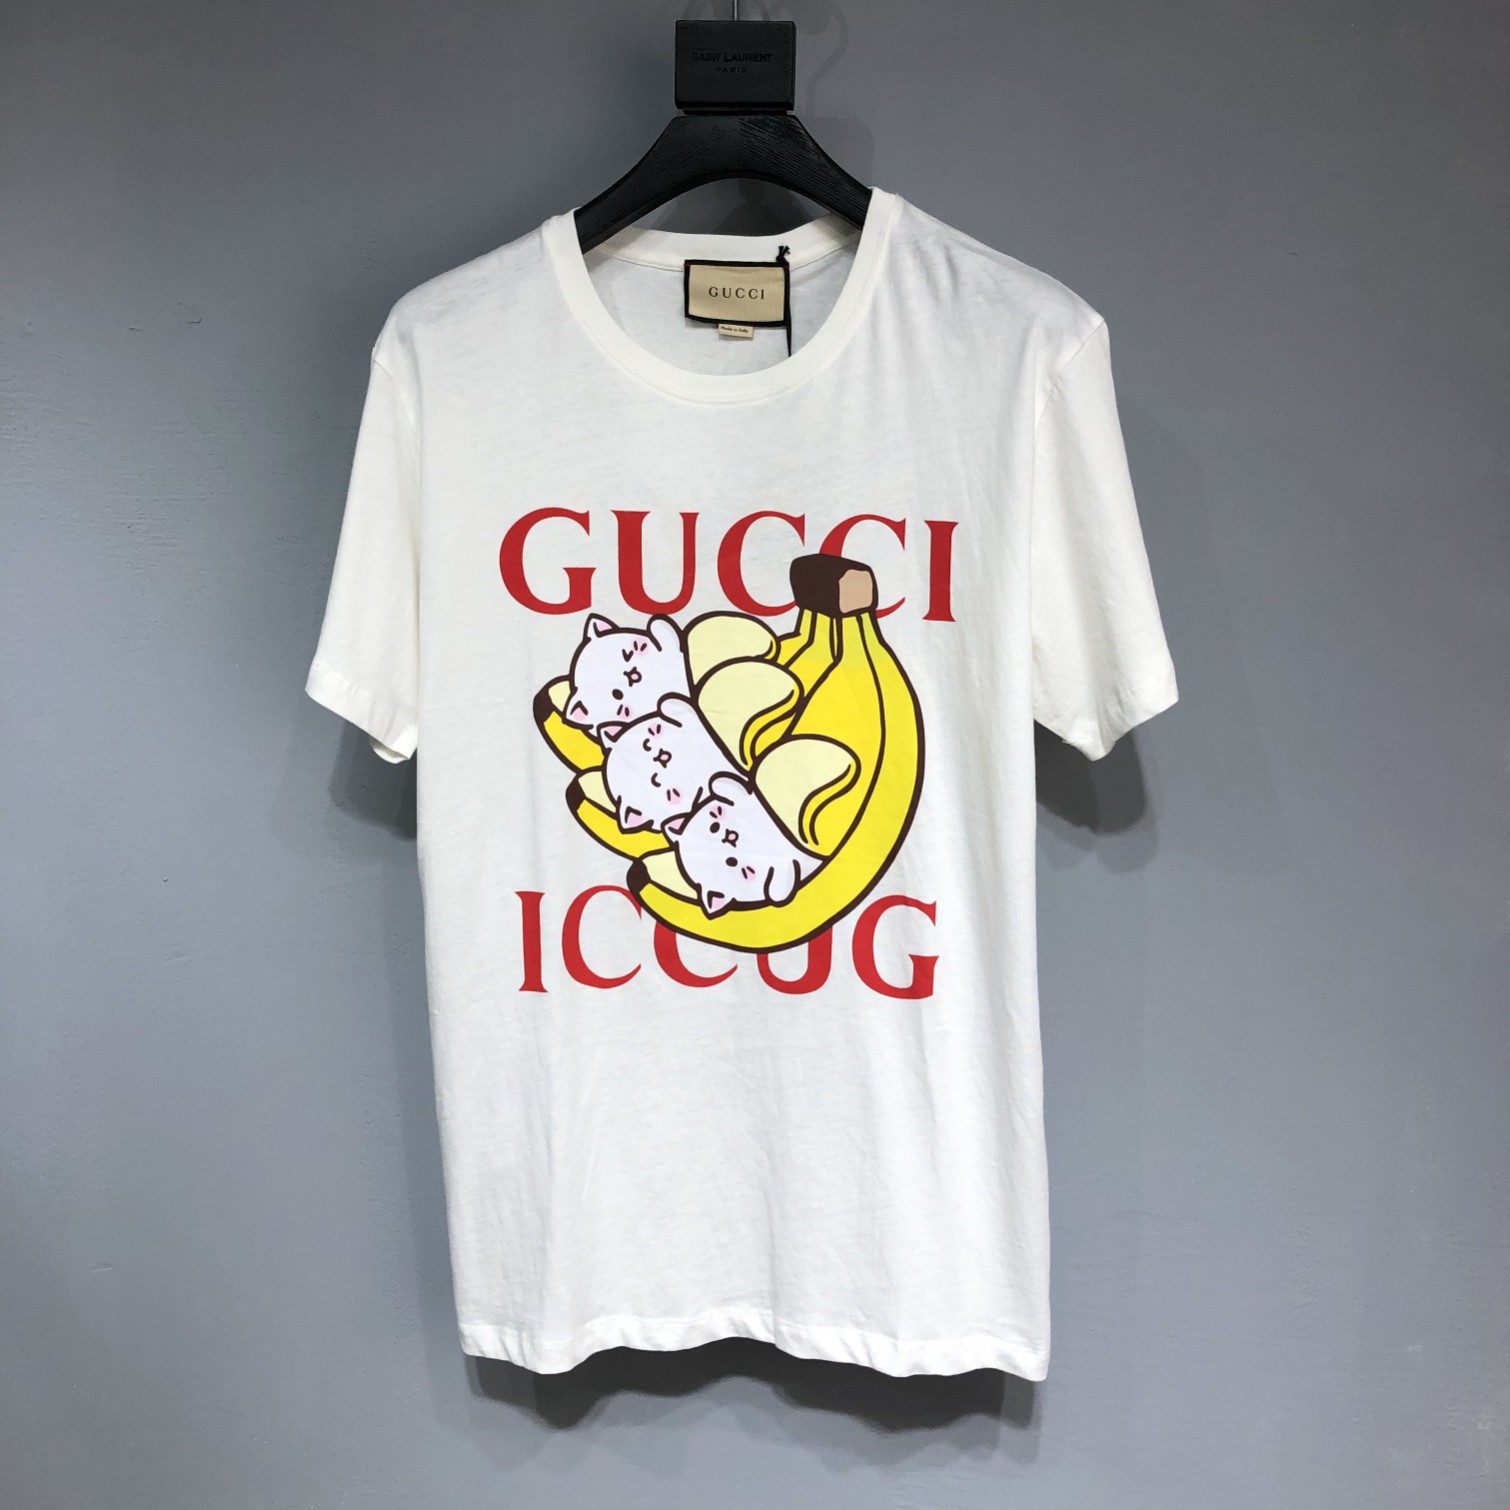 Bananya x Gucci Hot sale T-shirt